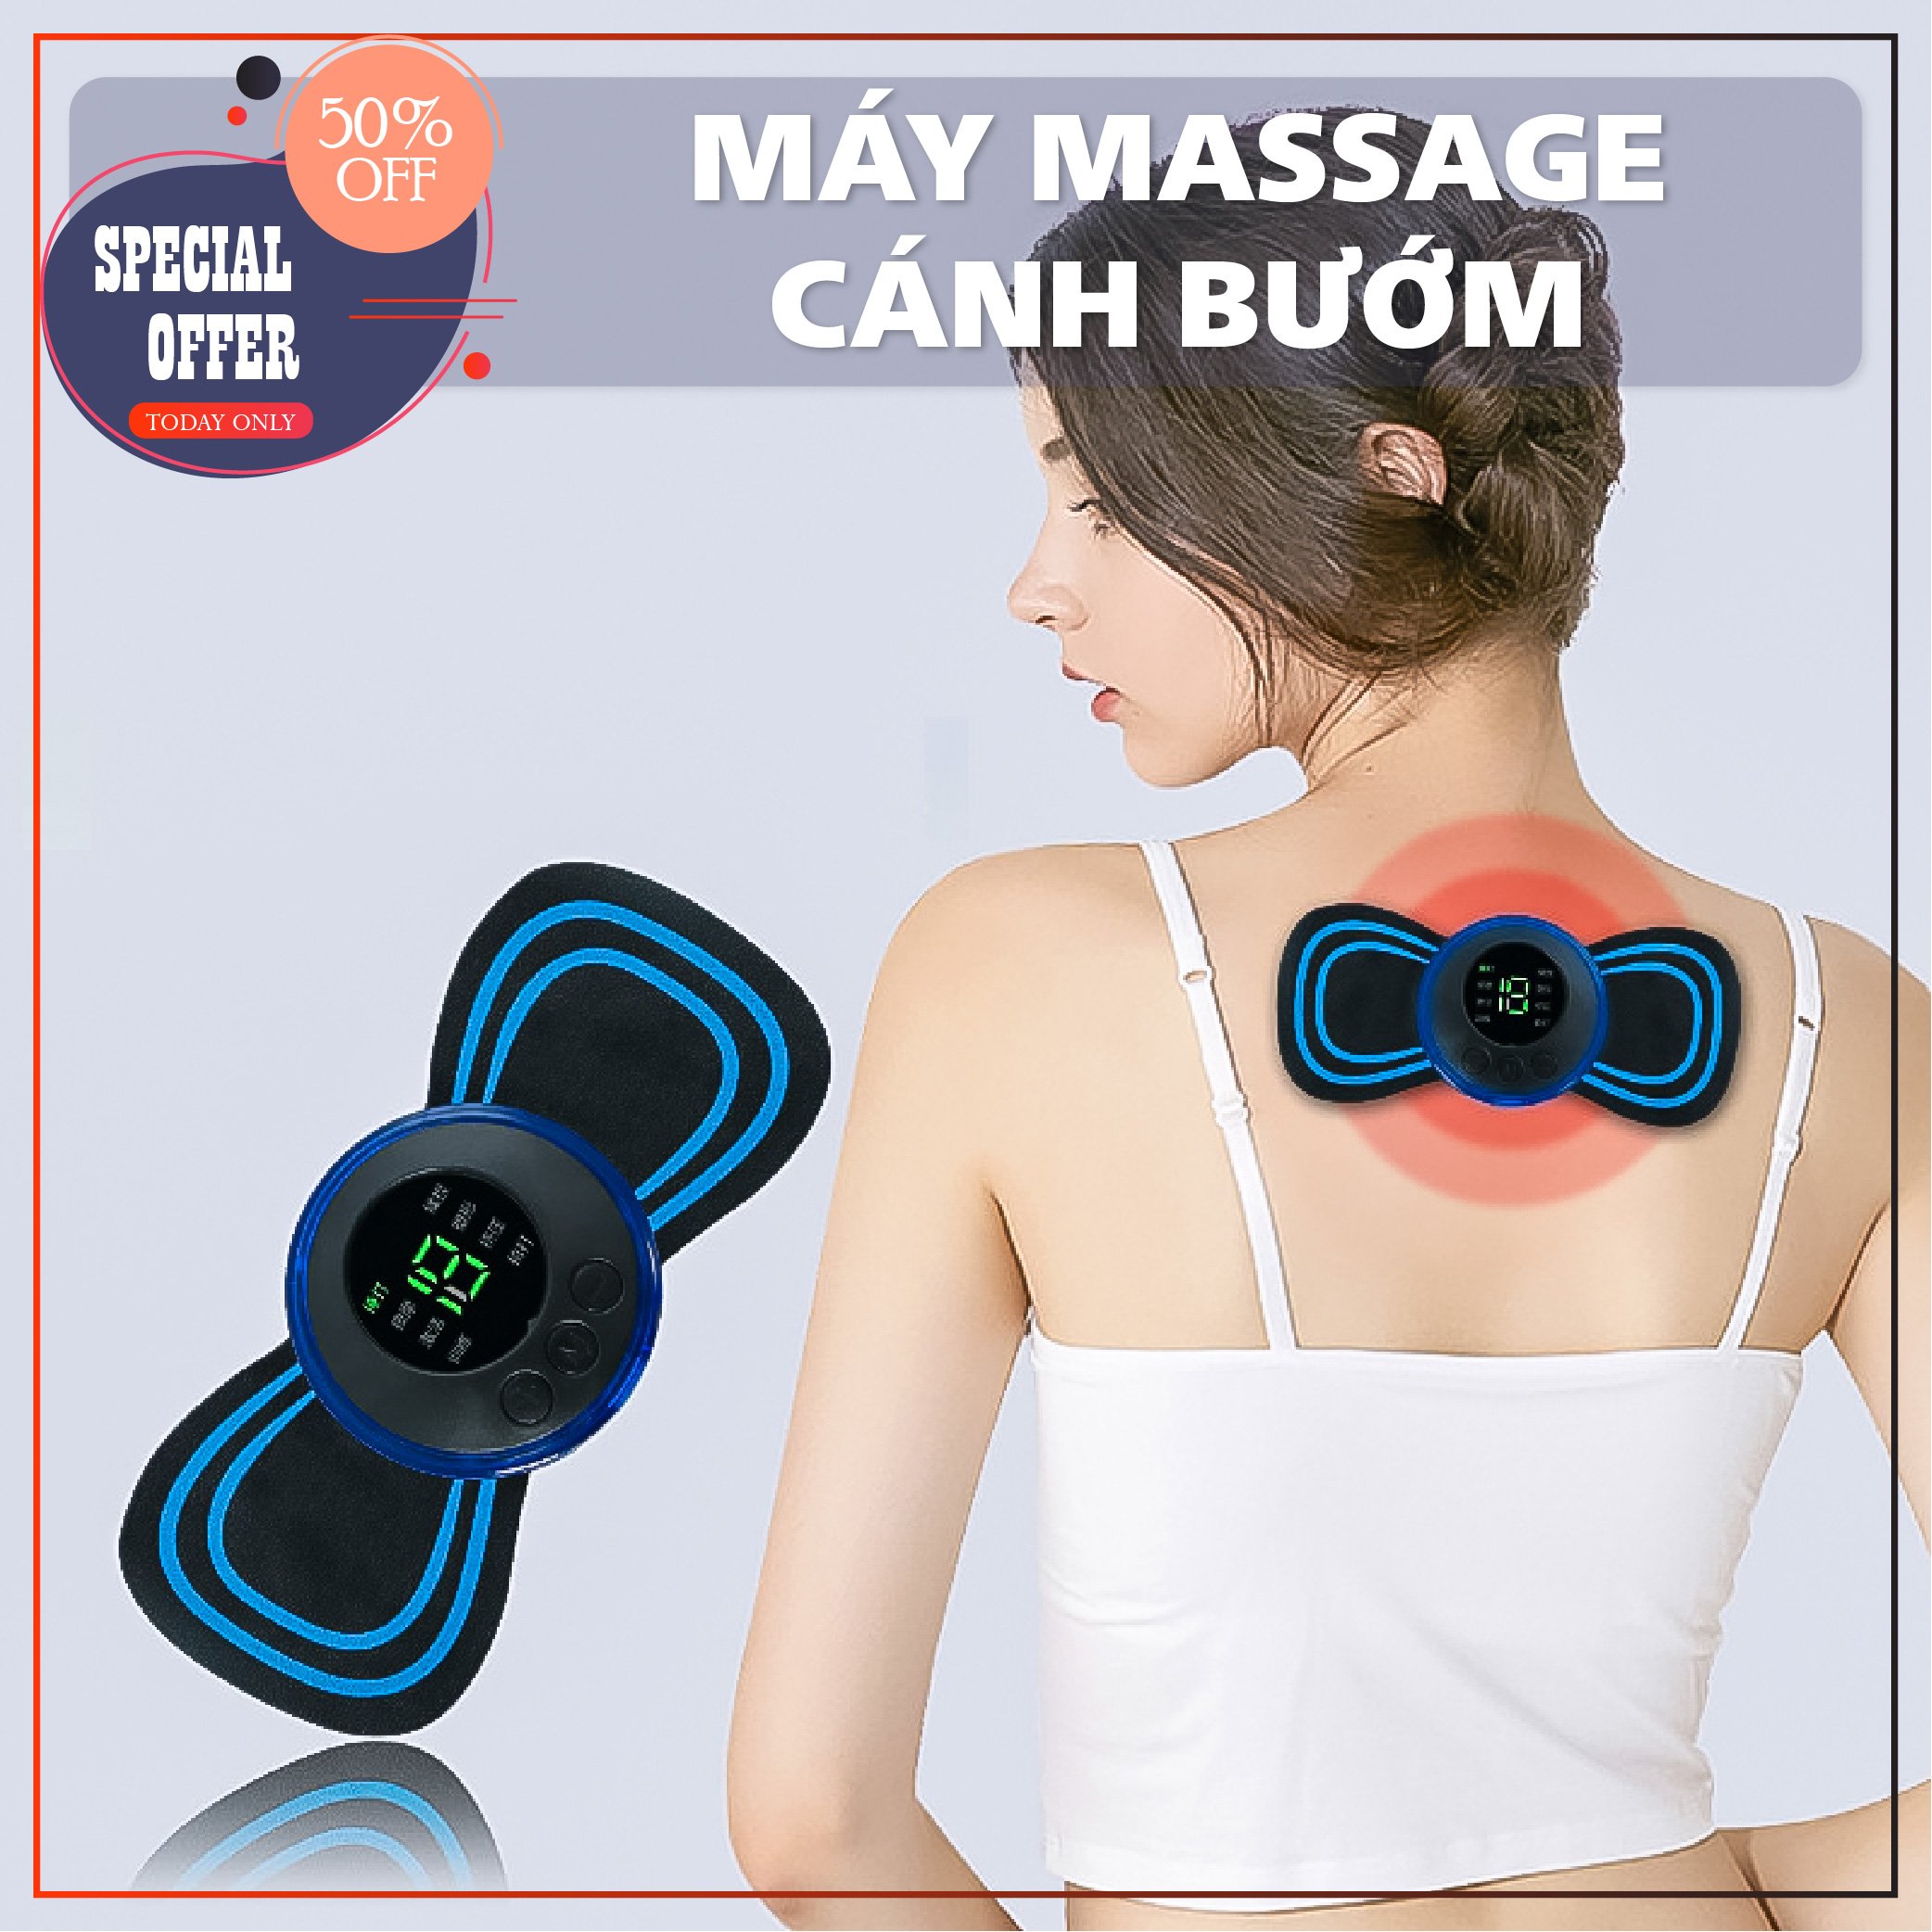 Miếng dán massage xoa bóp cổ vai gáy mini 6 chế độ tiện lợi, Máy mát xa châm cứu đấm bóp massage trị liệu xung điện